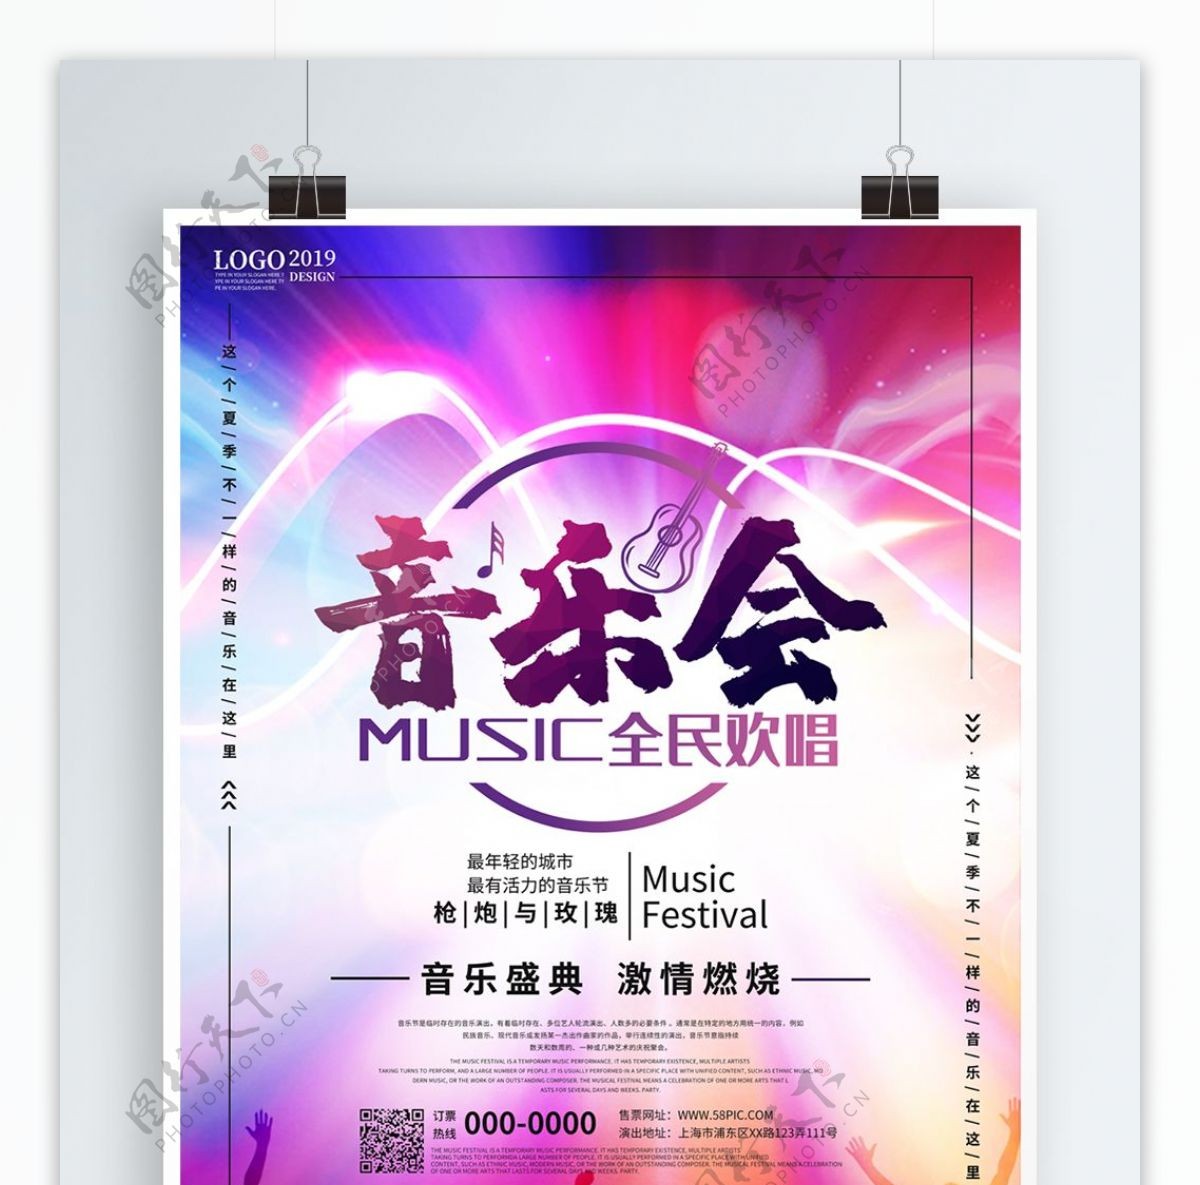 炫酷音乐会音乐节海报设计